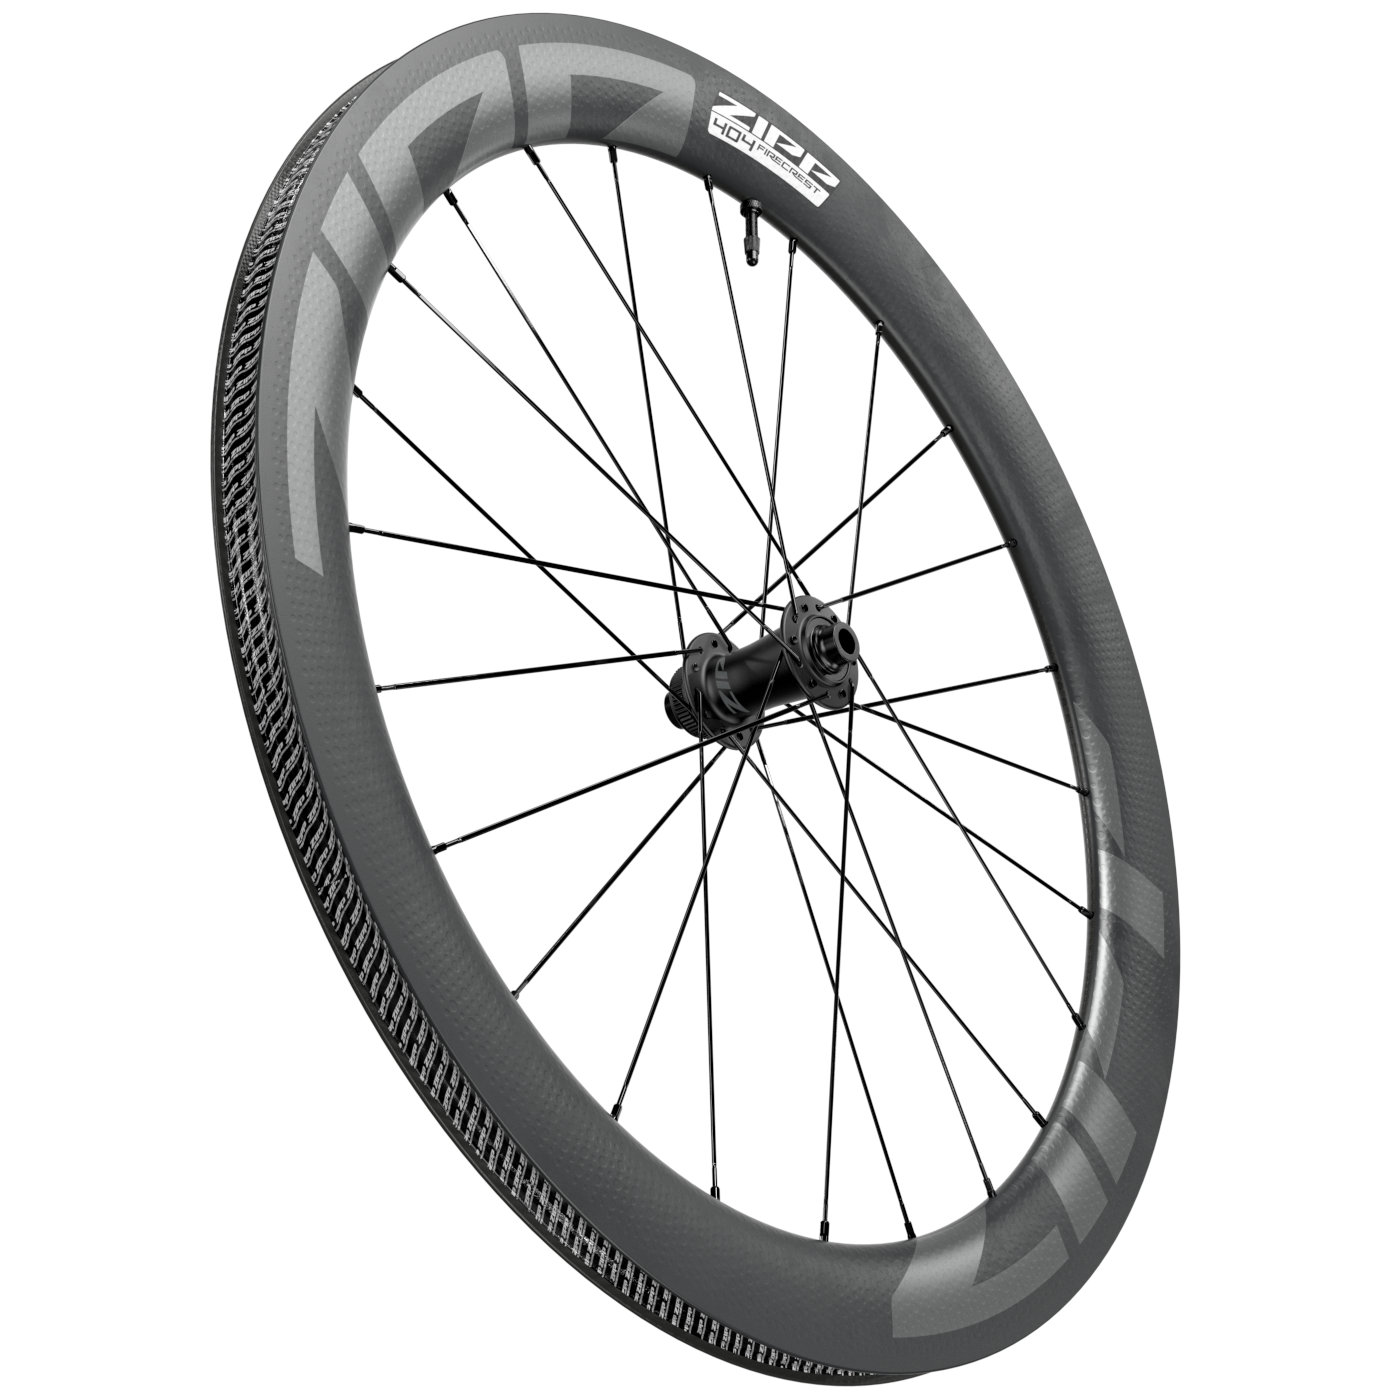 Productfoto van ZIPP 404 Firecrest Carbon Front Wheel - Tubeless - Centerlock - 12x100mm - black